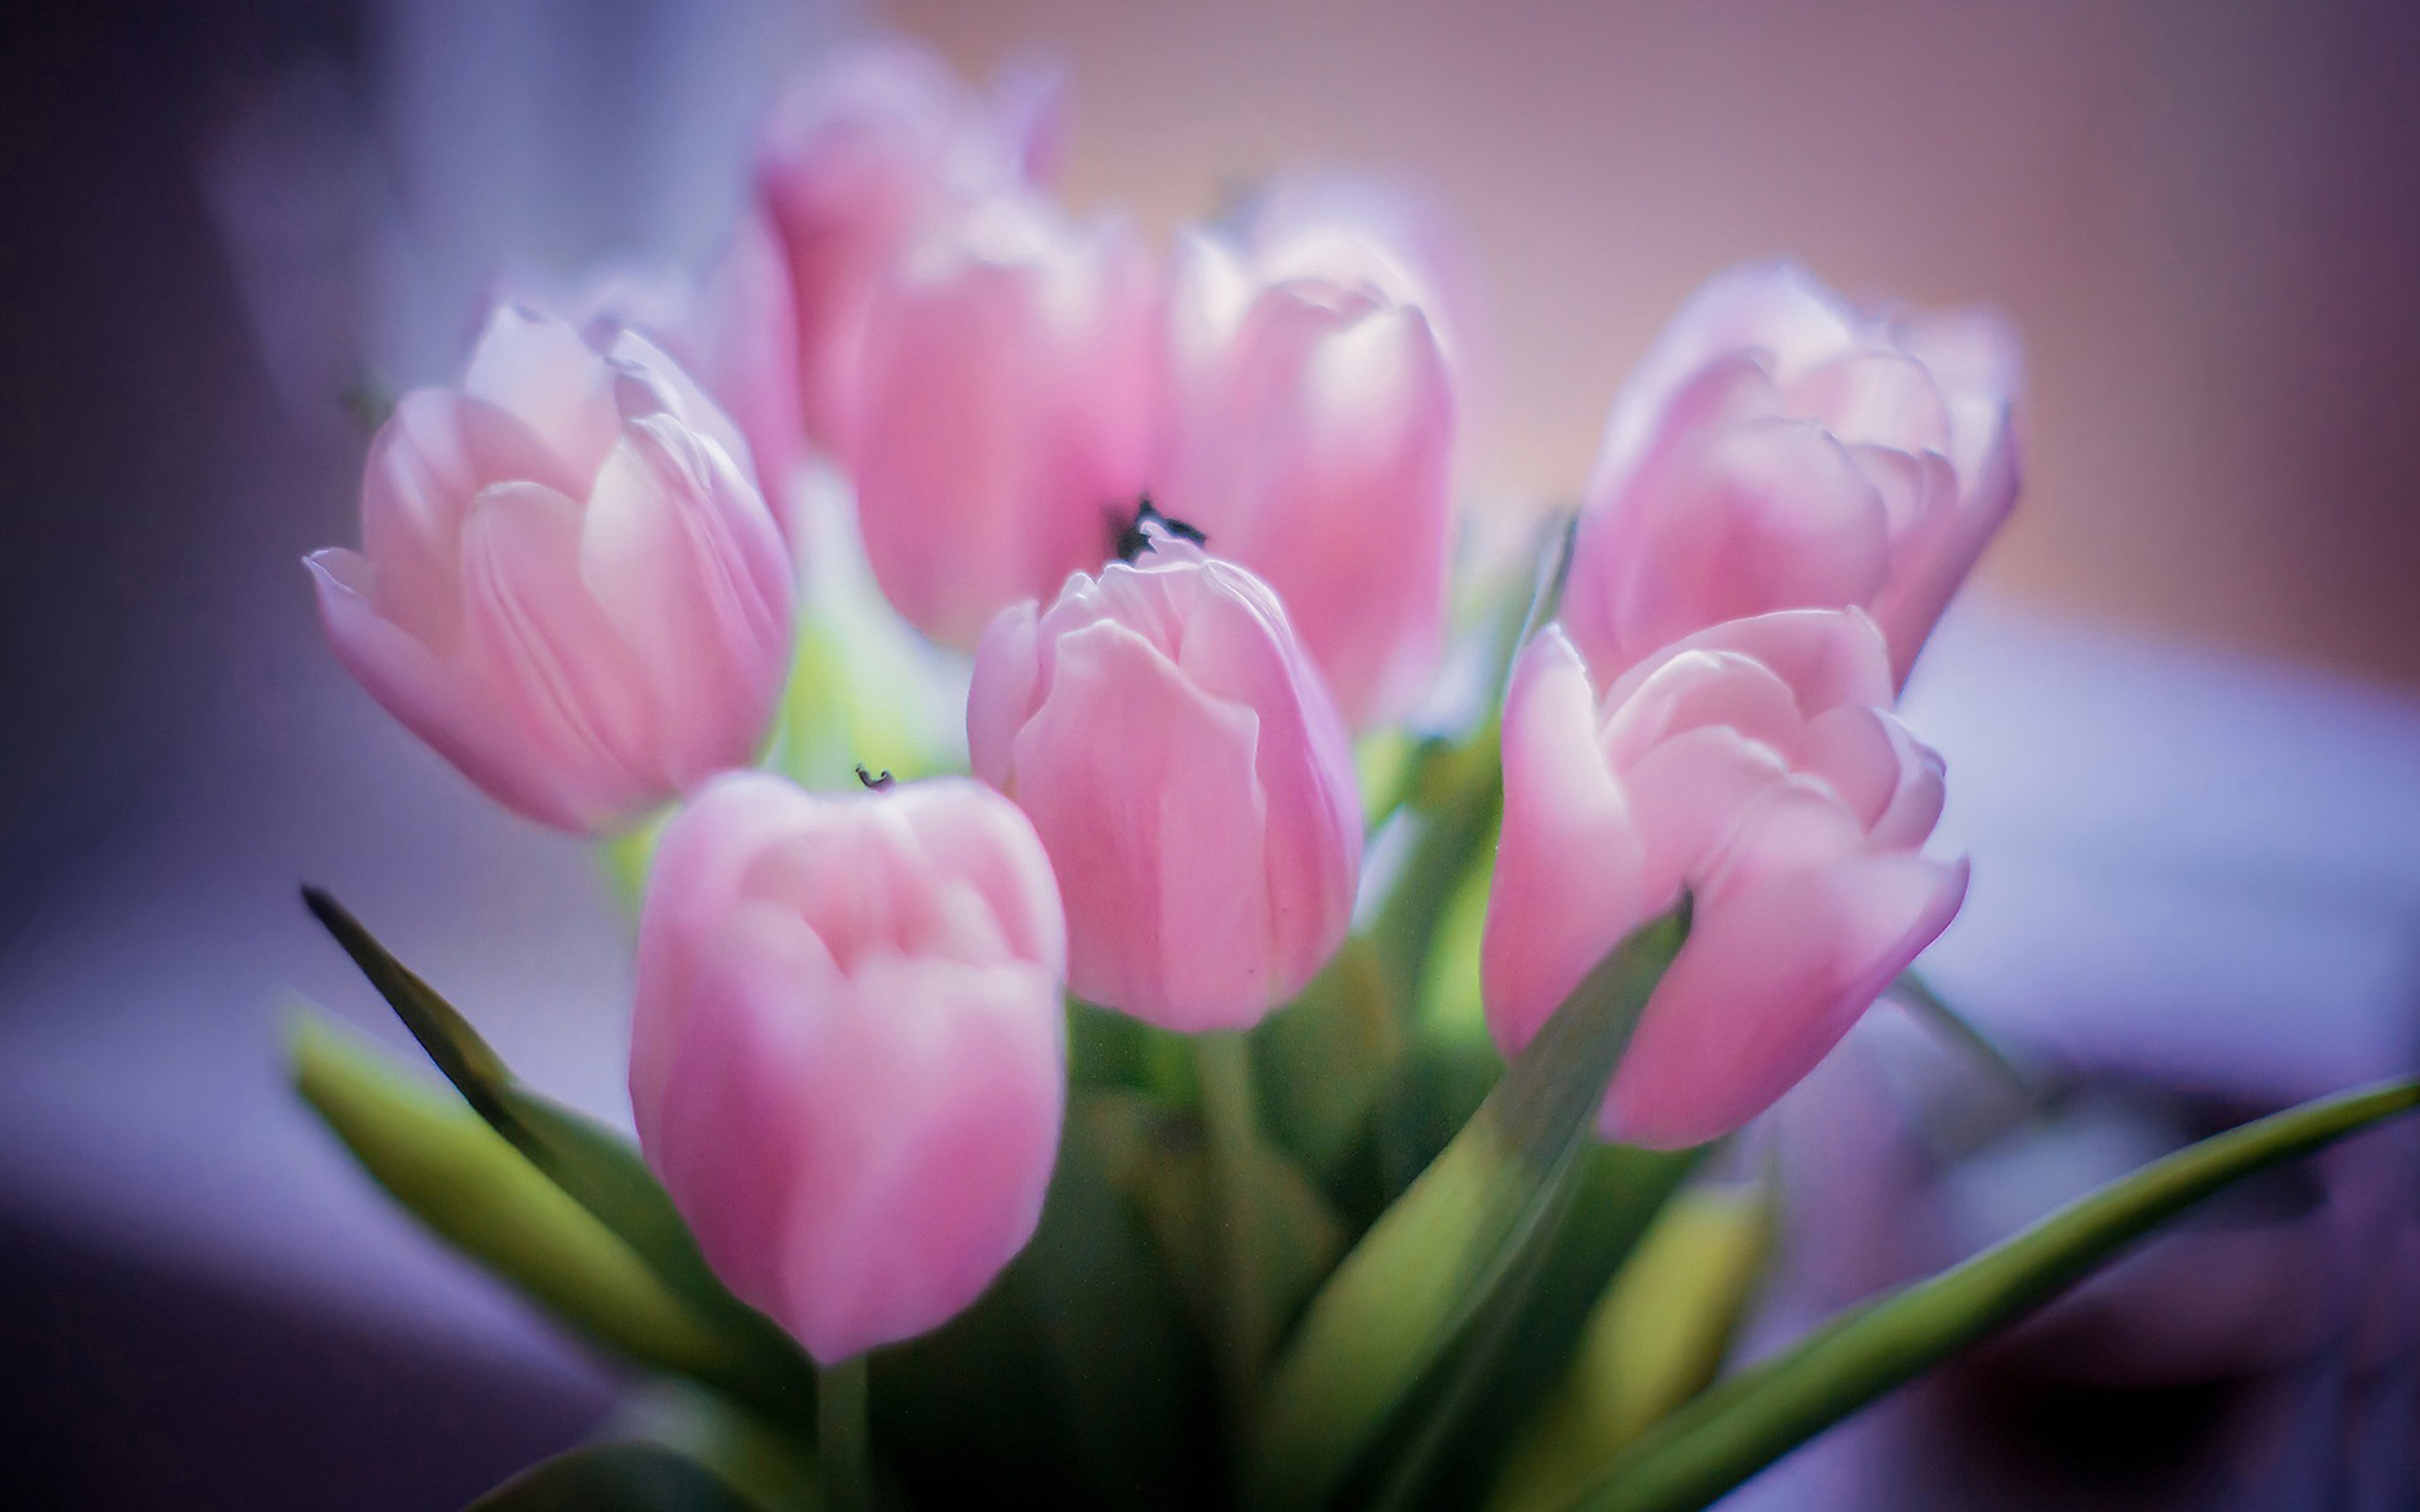 Обои на телефон красивые тюльпаны. Тюльпаны нюдовые. Розовые тюльпаны. Нежные тюльпаны. Тюльпаны. Нежно-розовый.